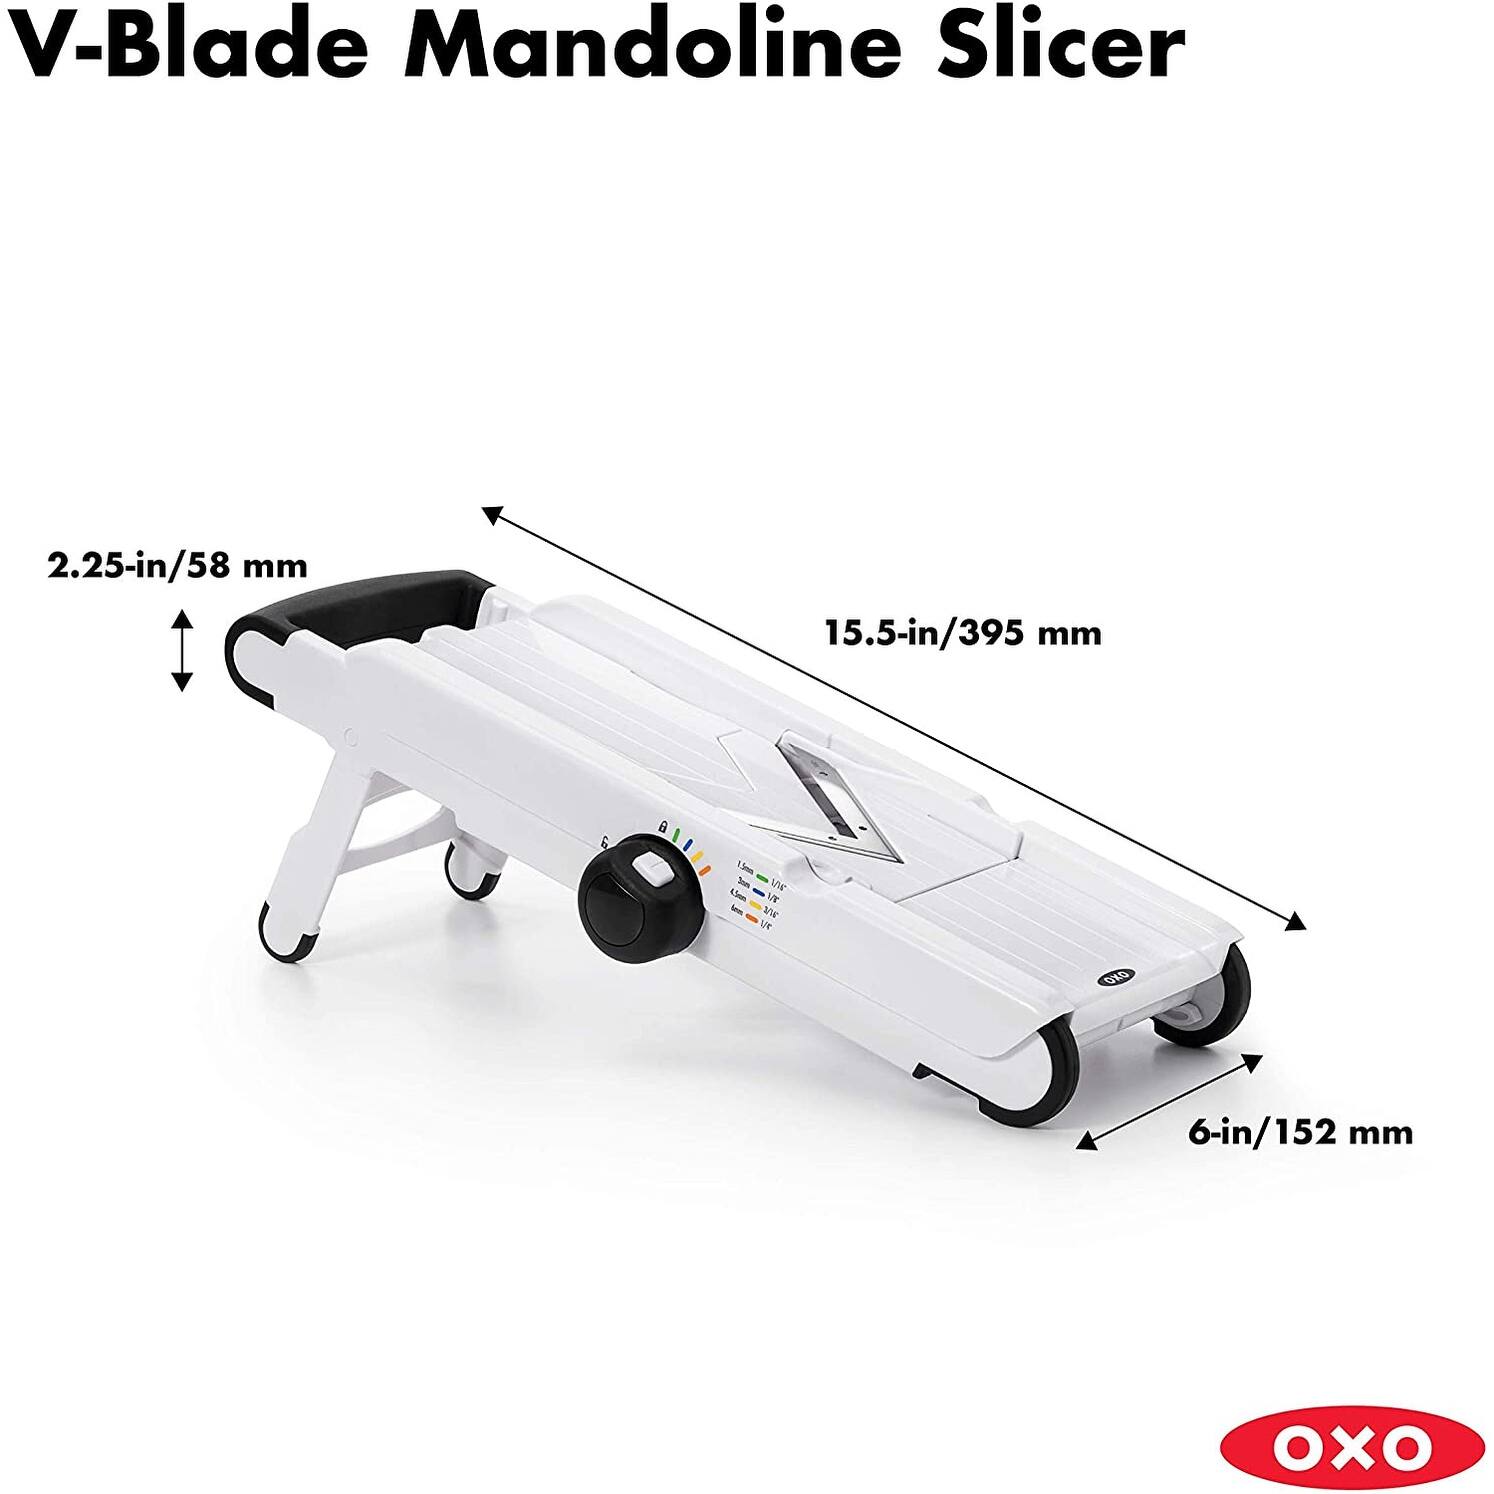 OXO Good Grips V-Blade Stainless Steel Mandoline Slicer, White